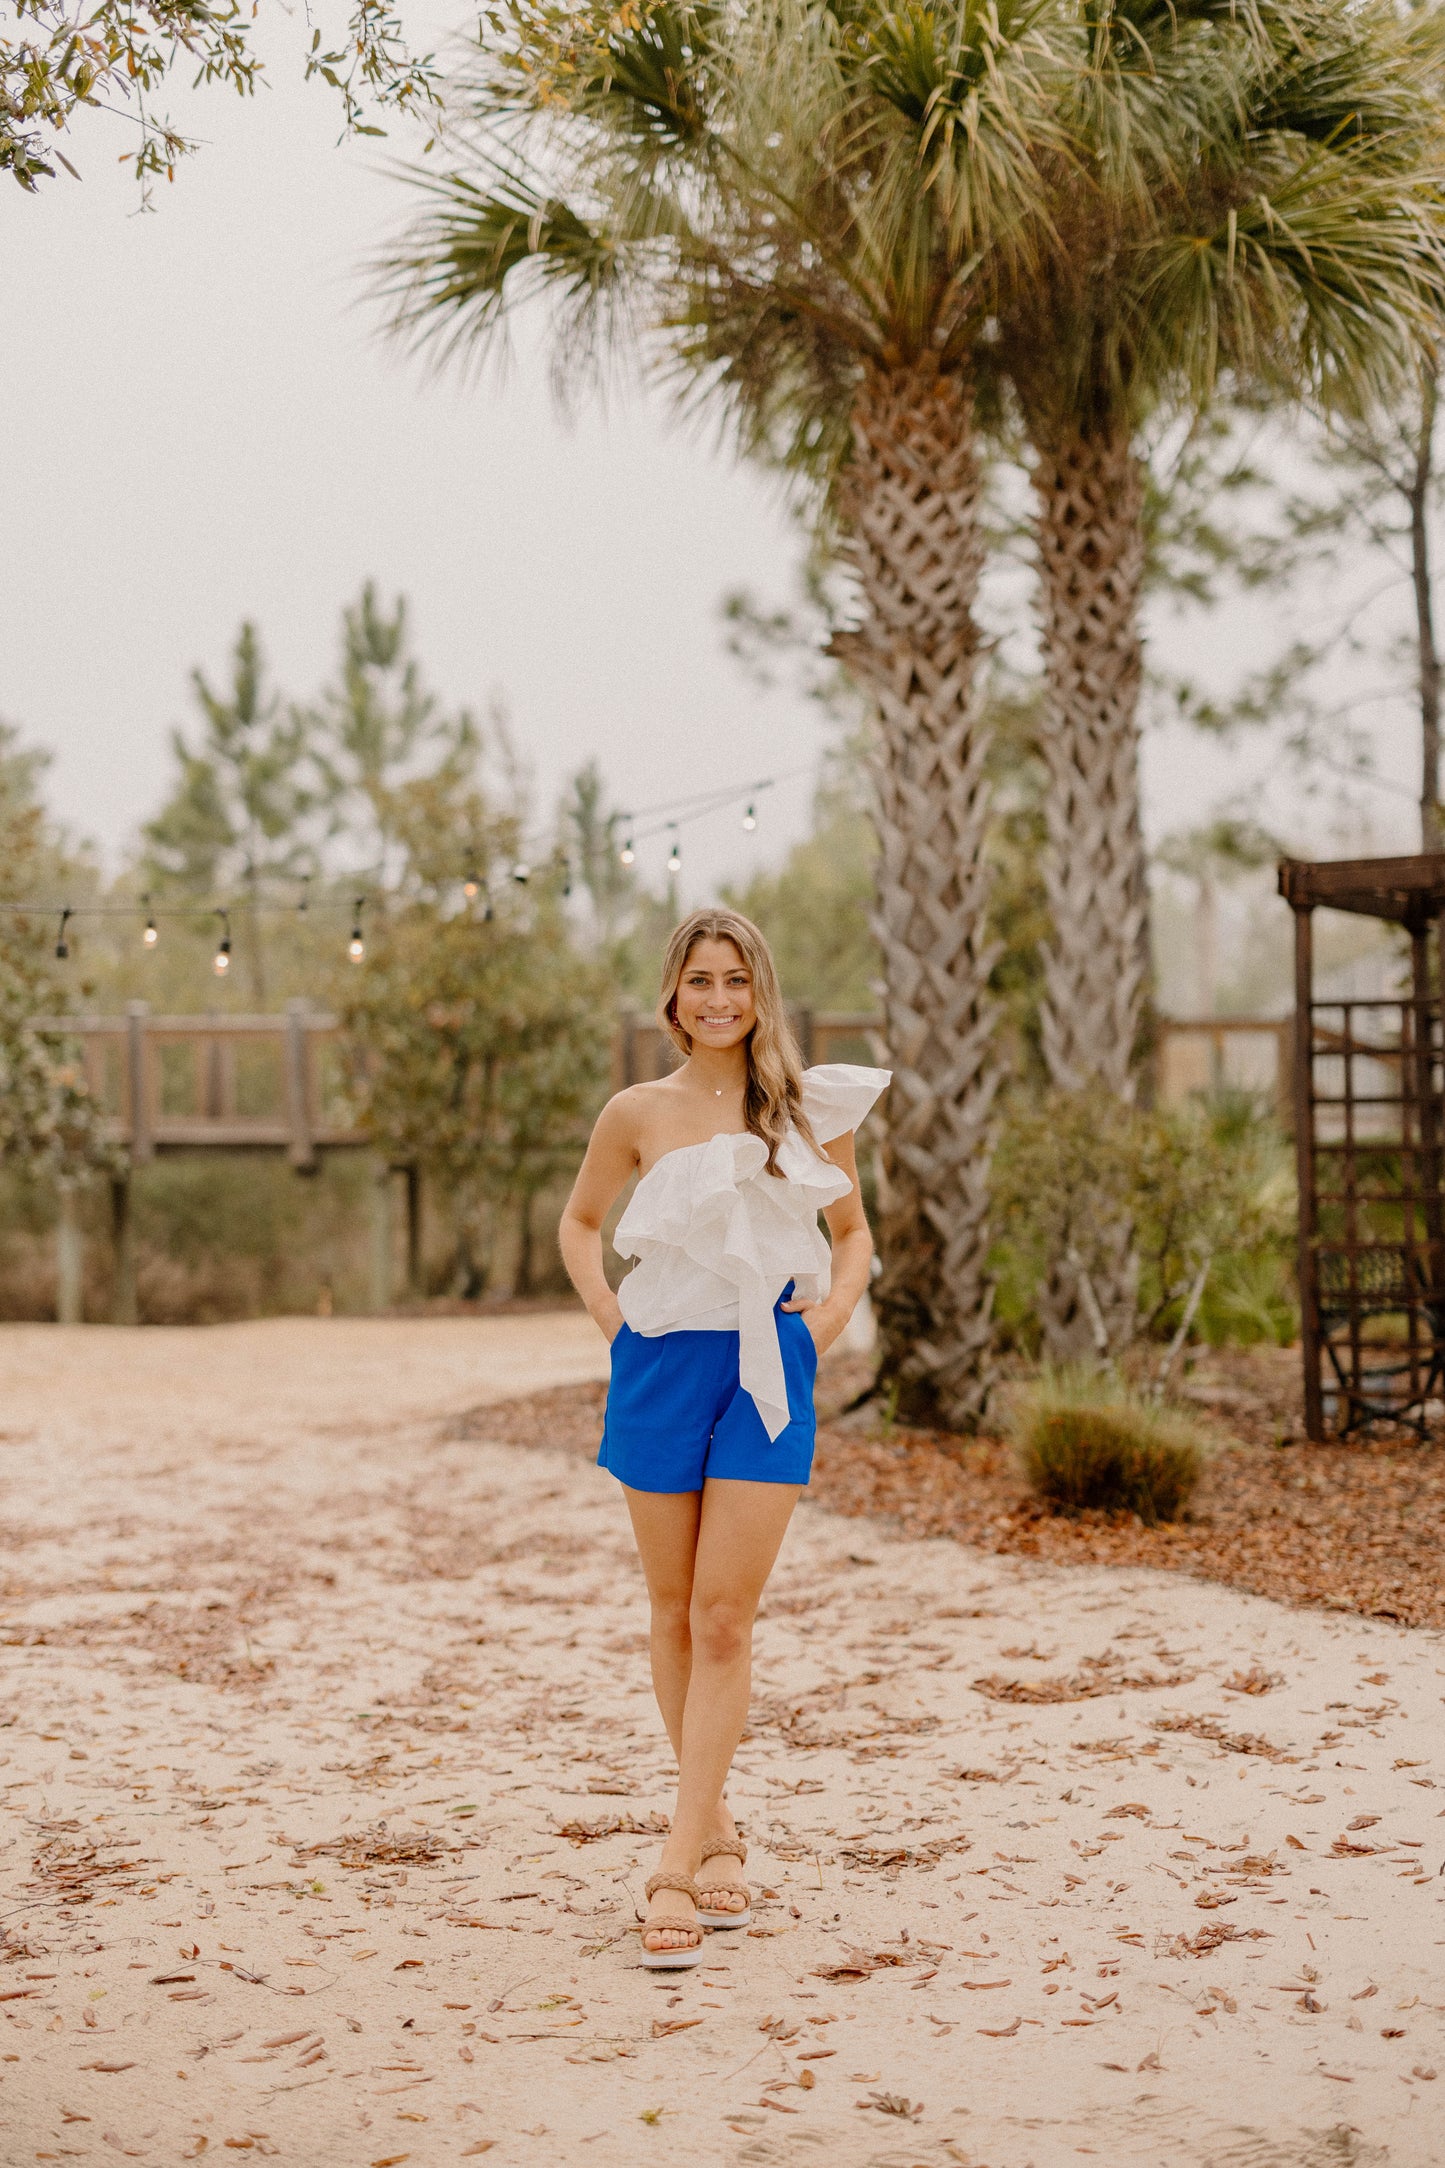 Samantha Trouser Royal Blue Shorts